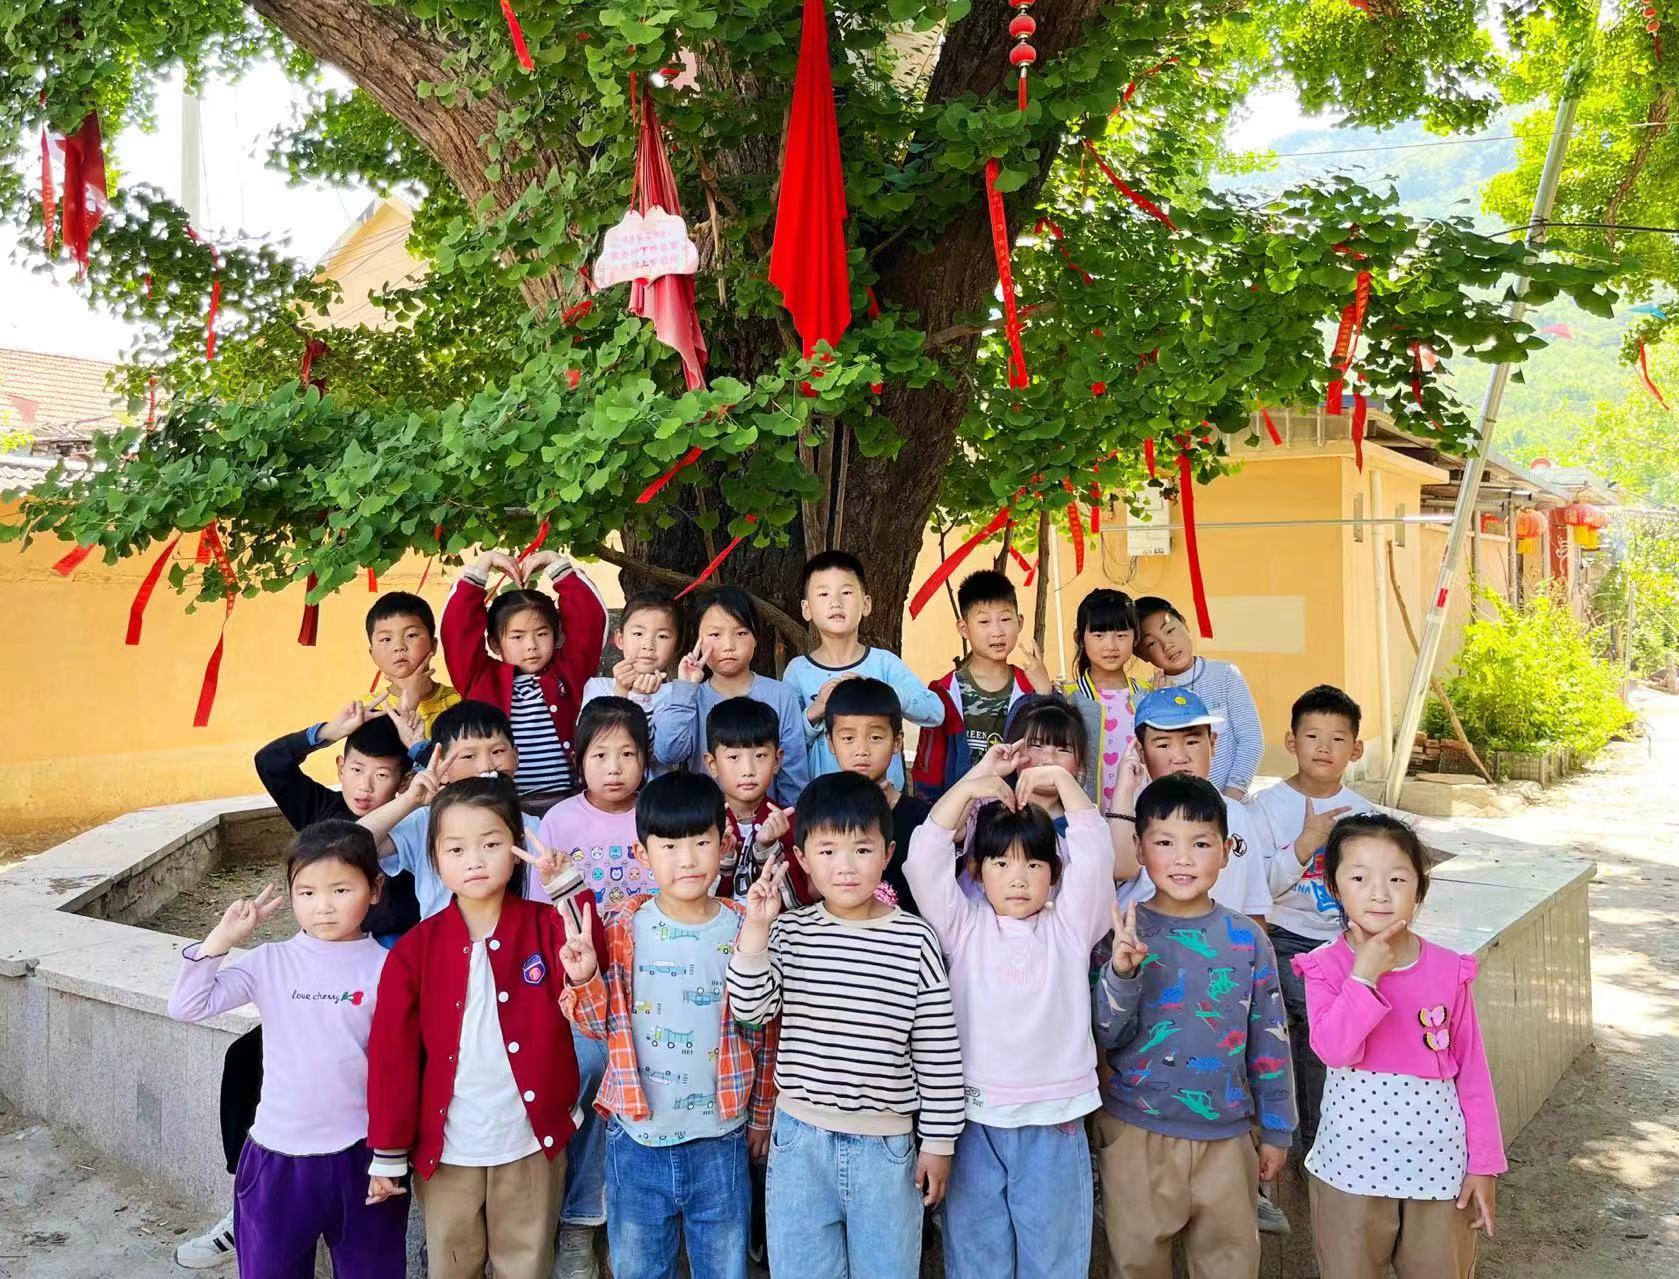 地方镇第二中心幼儿园开展探秘白果树主题活动